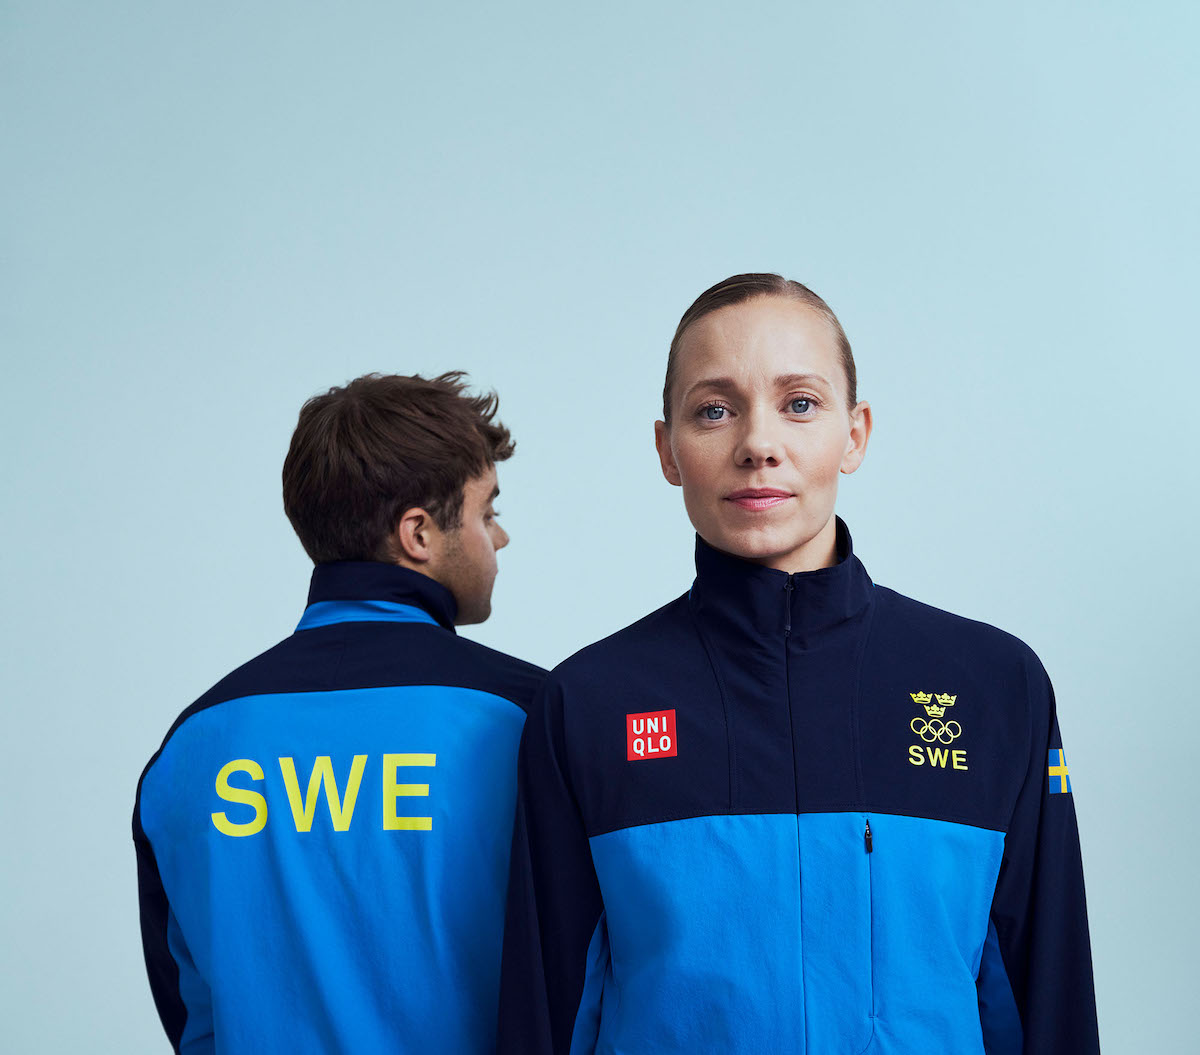 ユニクロ 北京冬季オリンピックのスウェーデン選手団に公式ウエアを提供 Wwdjapan